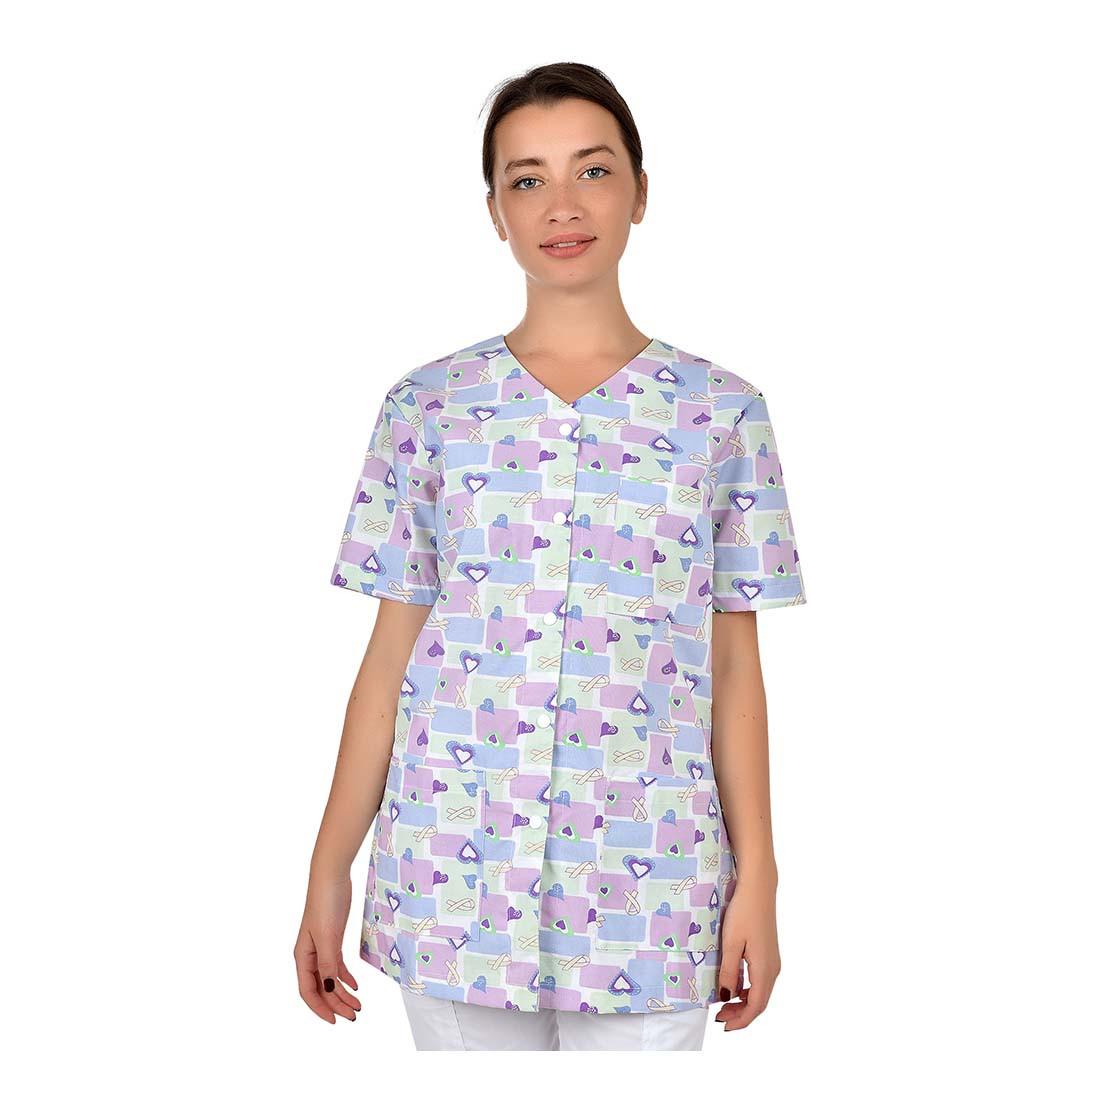 CARINA Damen Medizinische Tunika - Arbeitskleidung